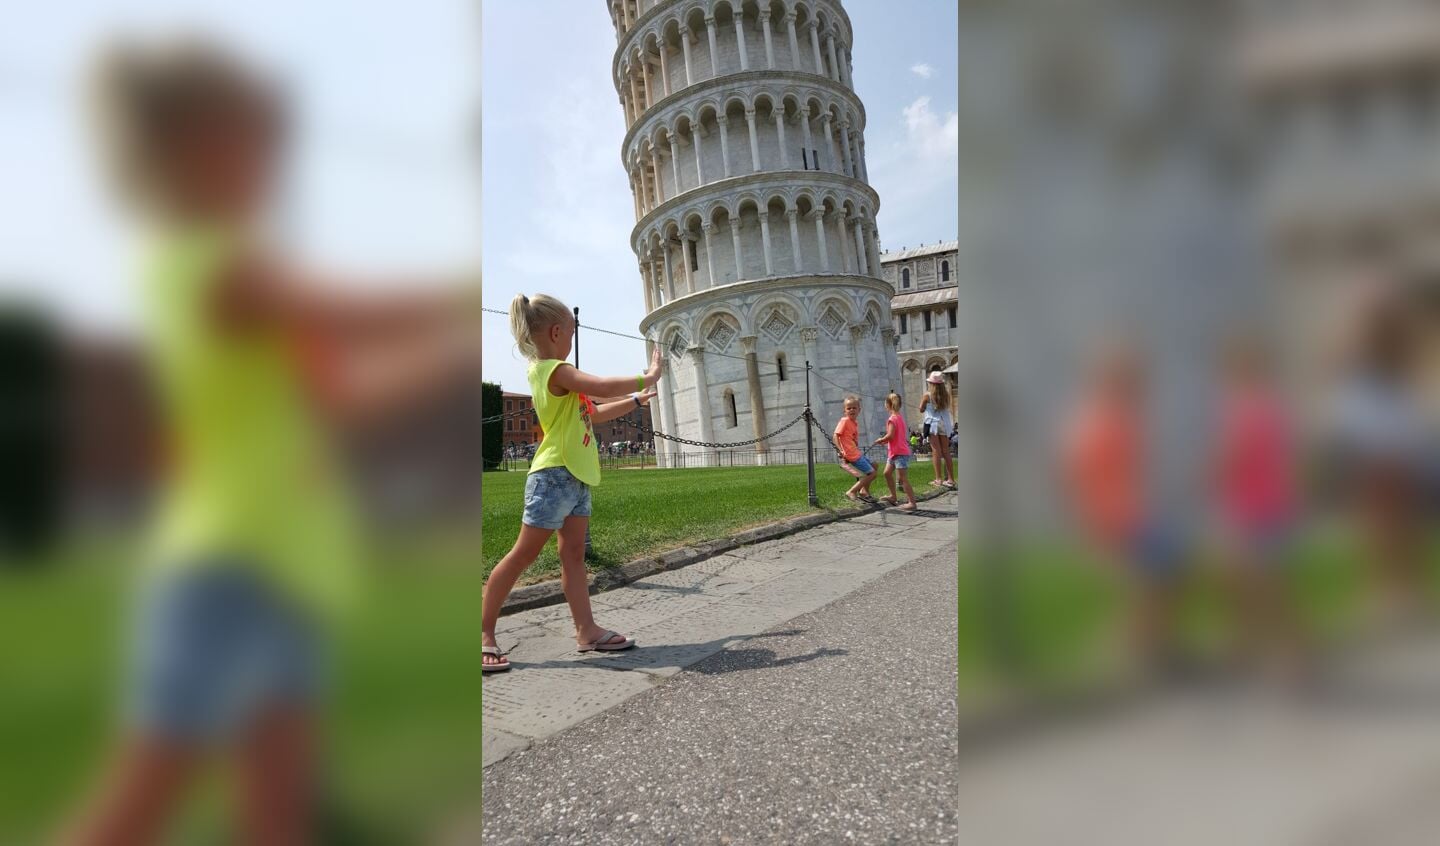 Evi de toren van Pisa terug te duwen. Jan en Maria van Weert